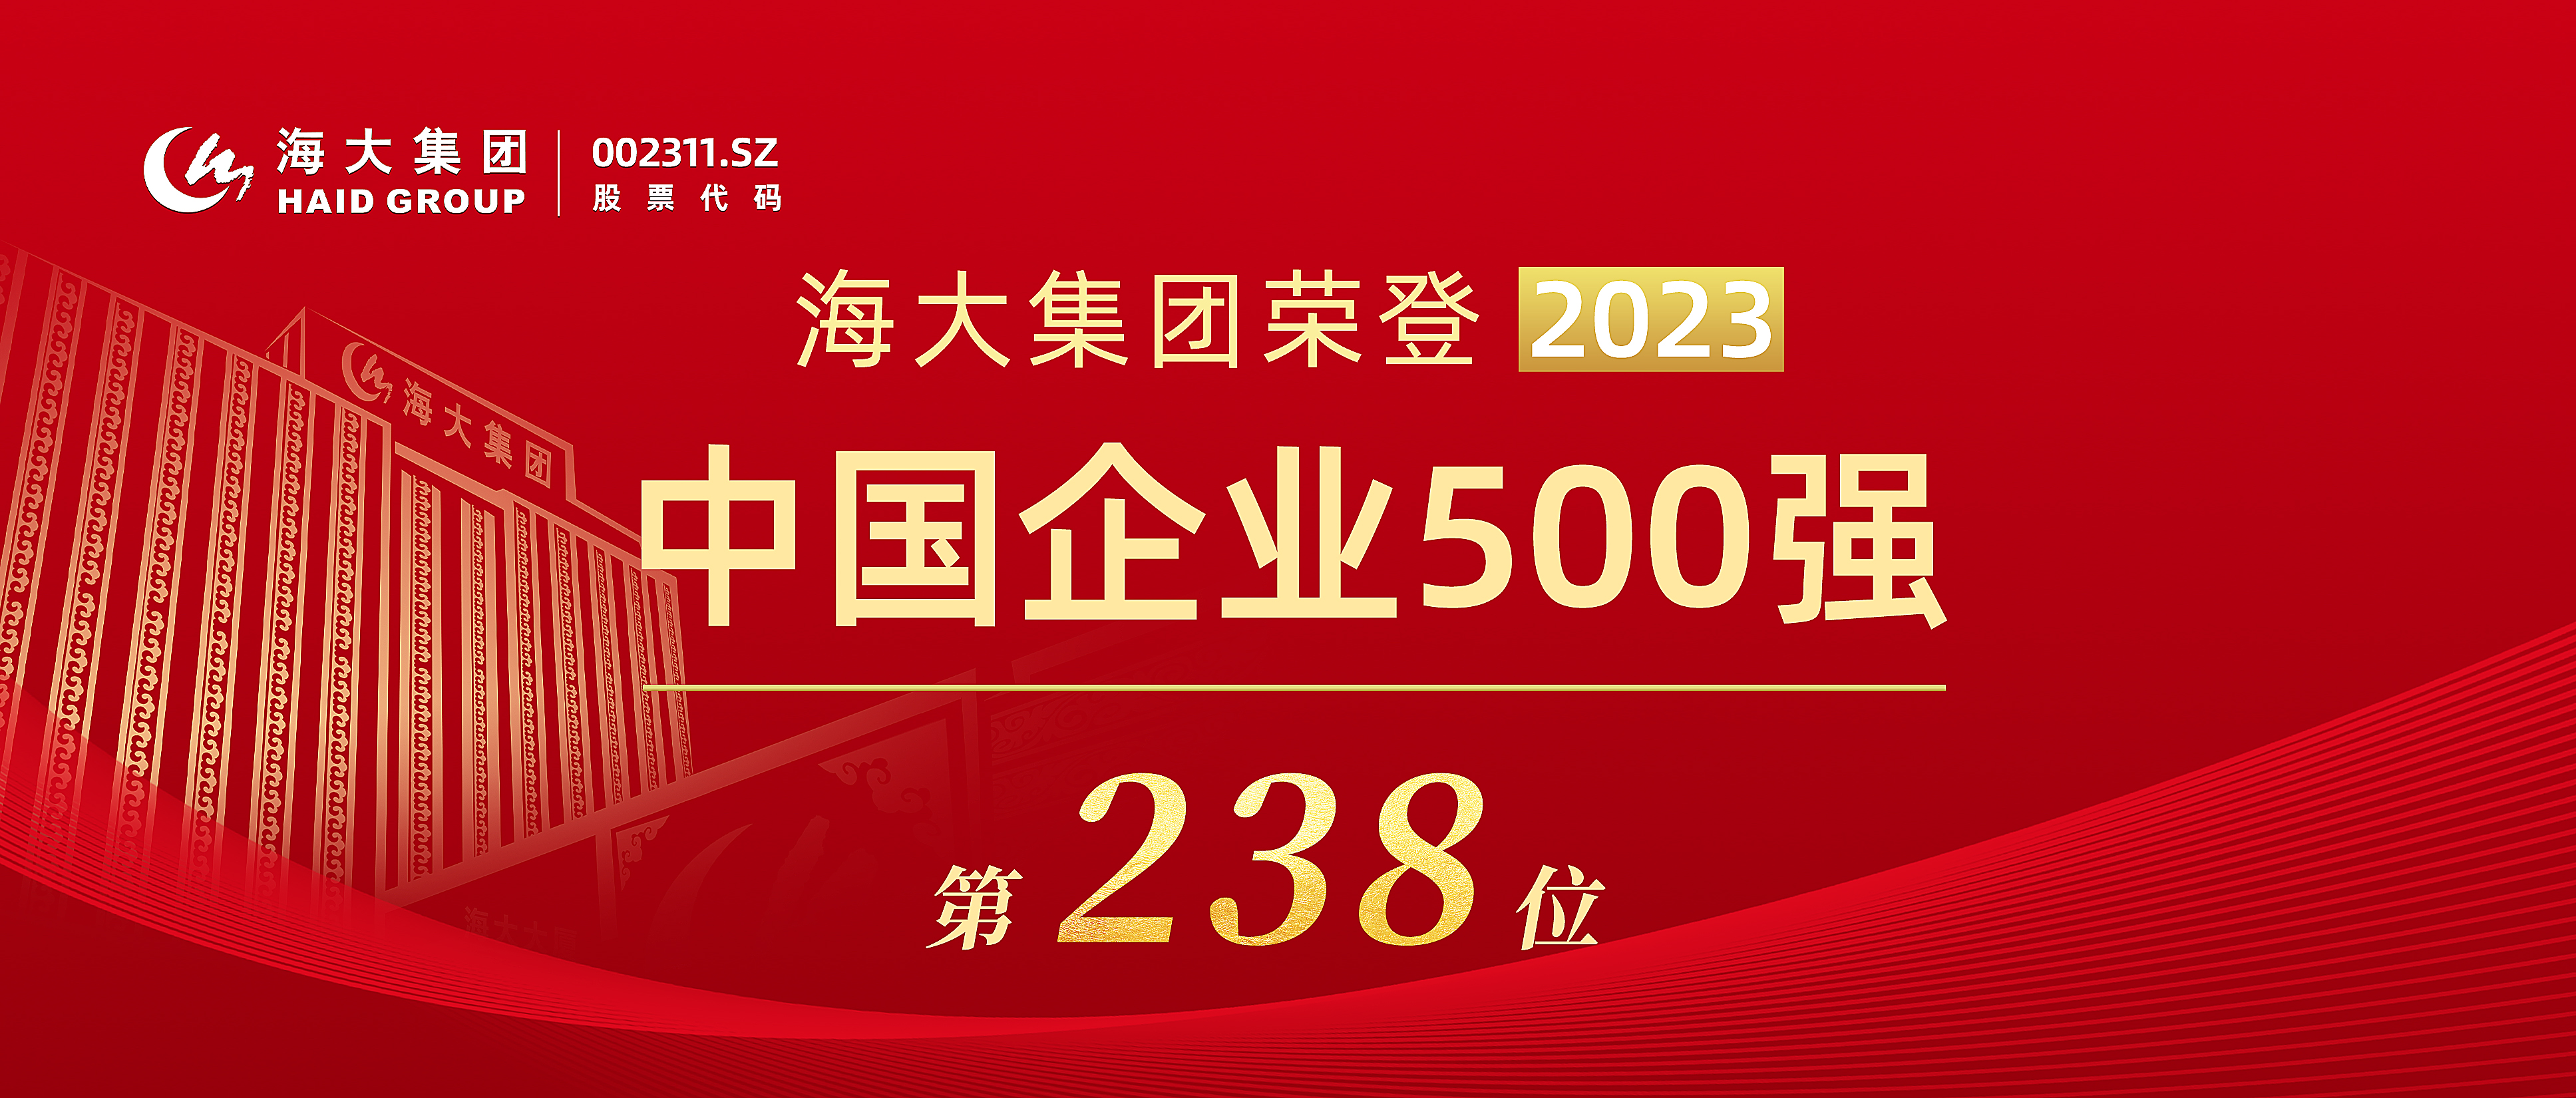 2023年中國企業500強頭圖(1).jpg